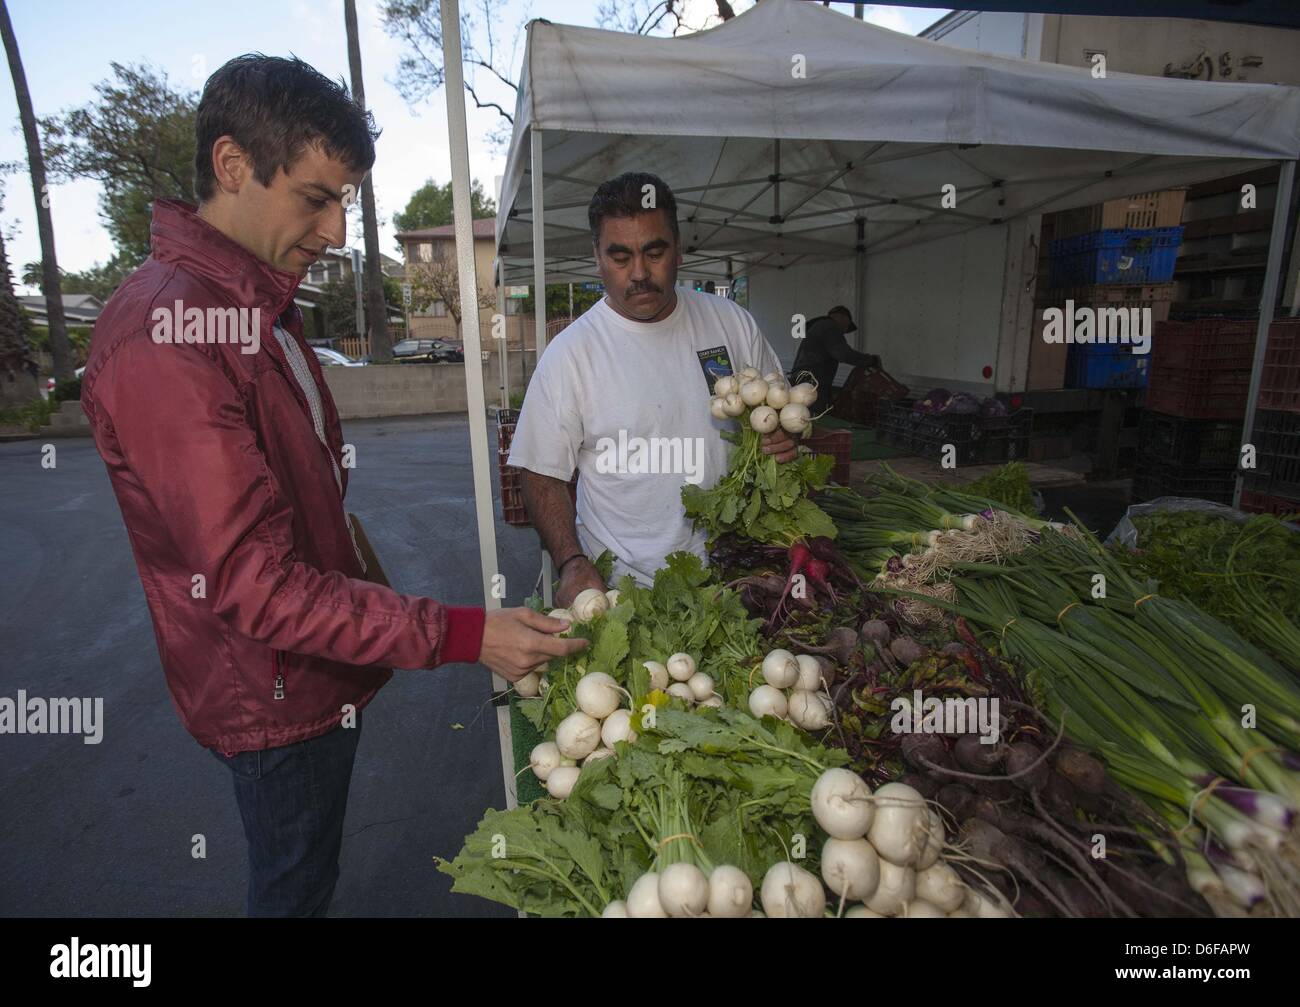 8 avril 2013 - Los Angeles, Californie, États-Unis - Dan Chak, fondateur et PDG de petite ferme, douce à un marché de l'ouest d'Hollywood. (Crédit Image : © Chiu/ZUMAPRESS.com) Ringo Banque D'Images